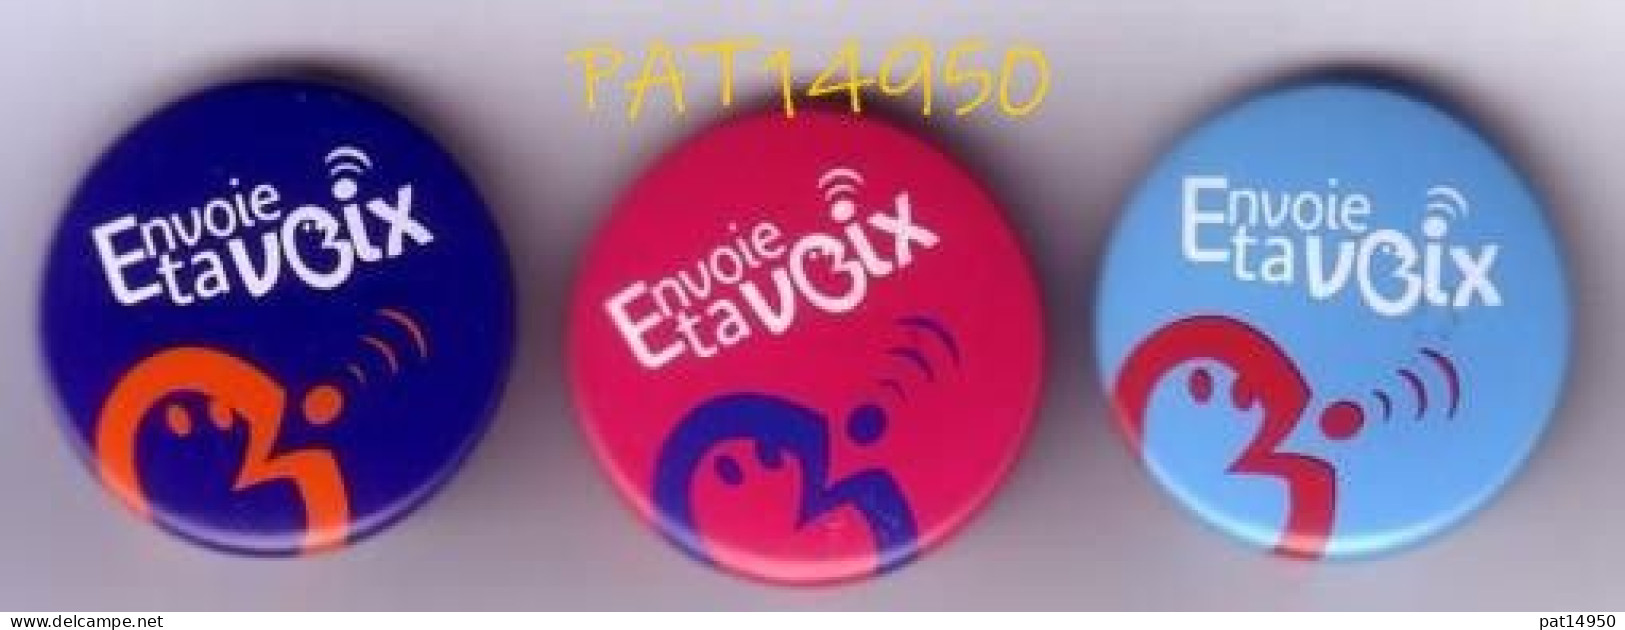 PAT14950 FRANCE TELECOM    MESSAGE EXPRESS  Envoie Ta VOIX  Lot De 3 Badges Différents - France Télécom